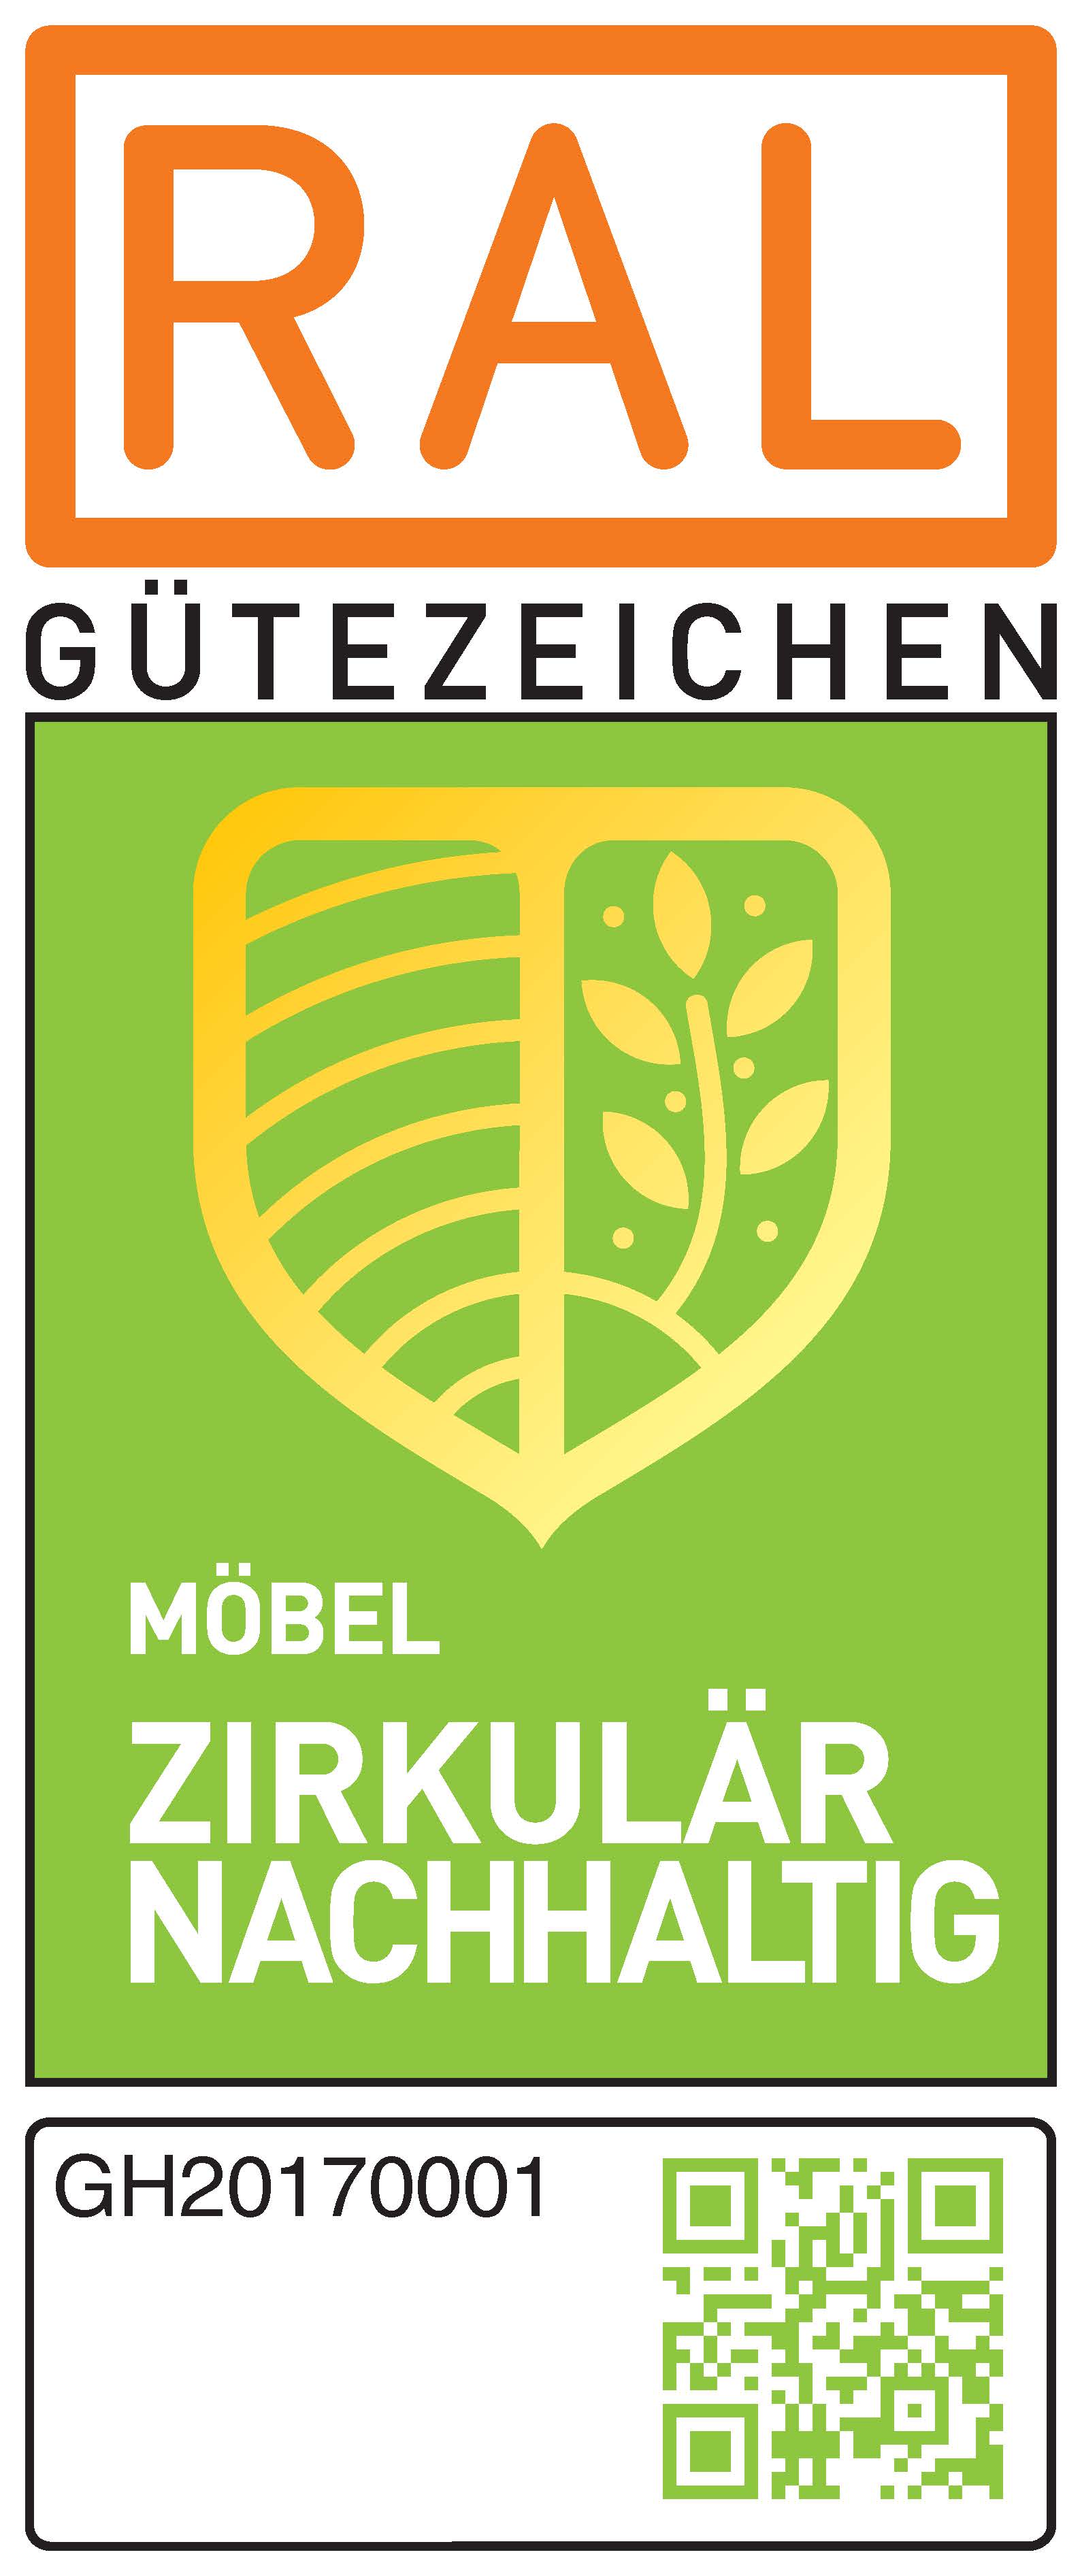 PM-2023-DGM-bruehl-Moebel-Zirkulaer-Nachhaltig-1.